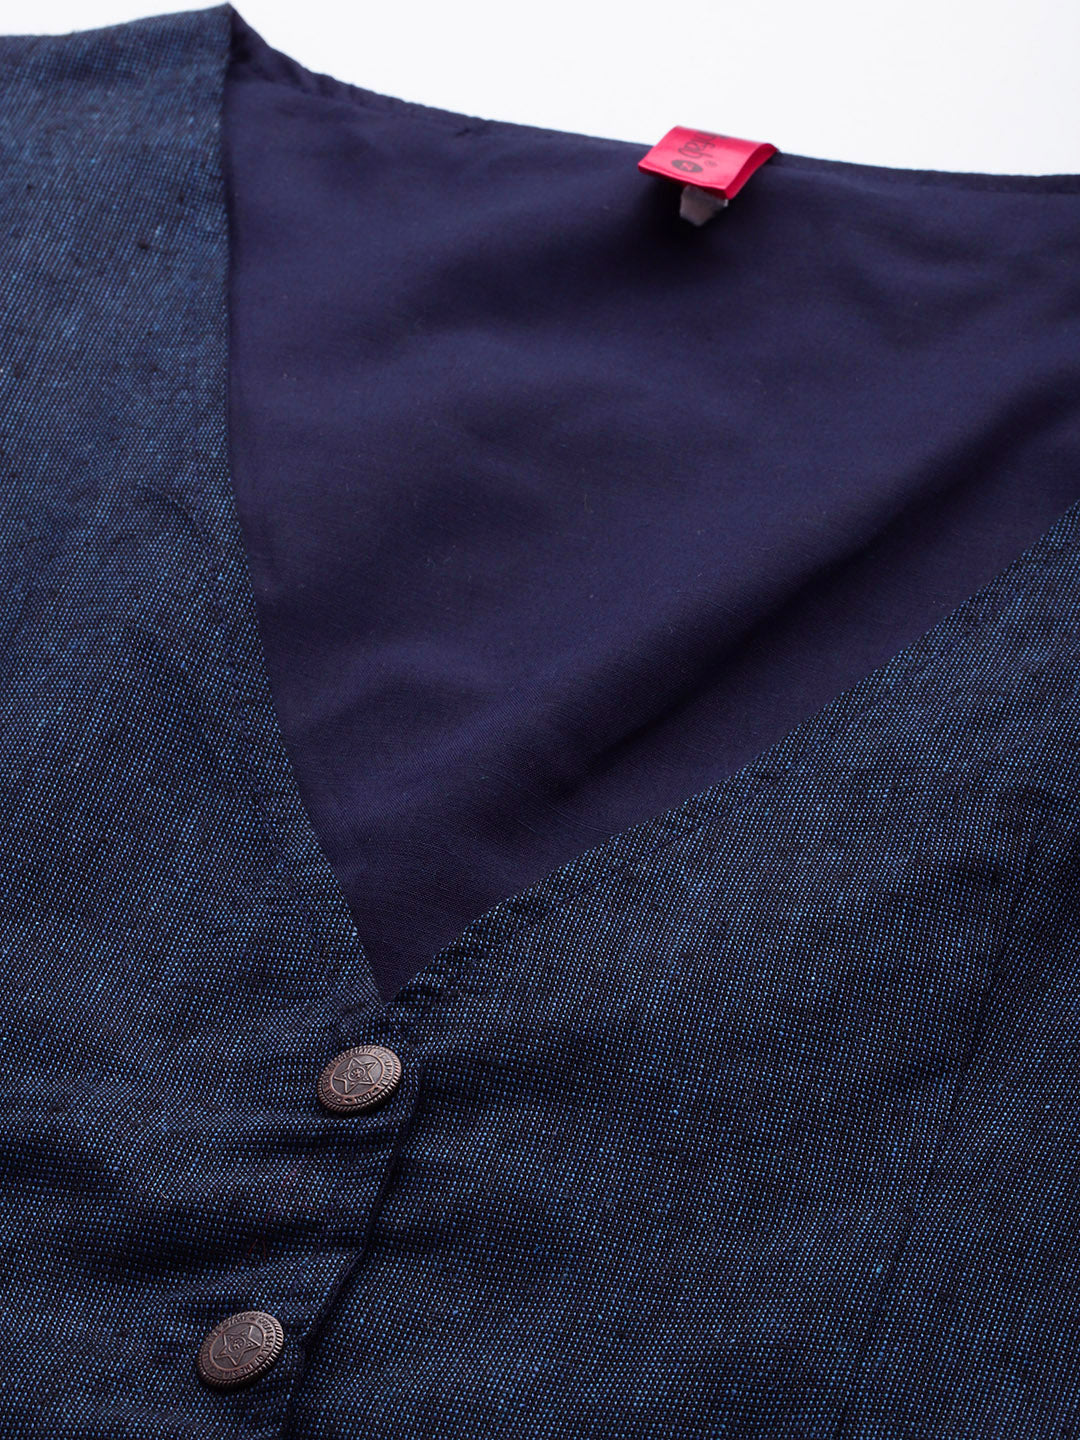 KRISP Tailored Studded Washed Indigo Denim Waistcoat - Jackets & Coats from  Krisp Clothing UK